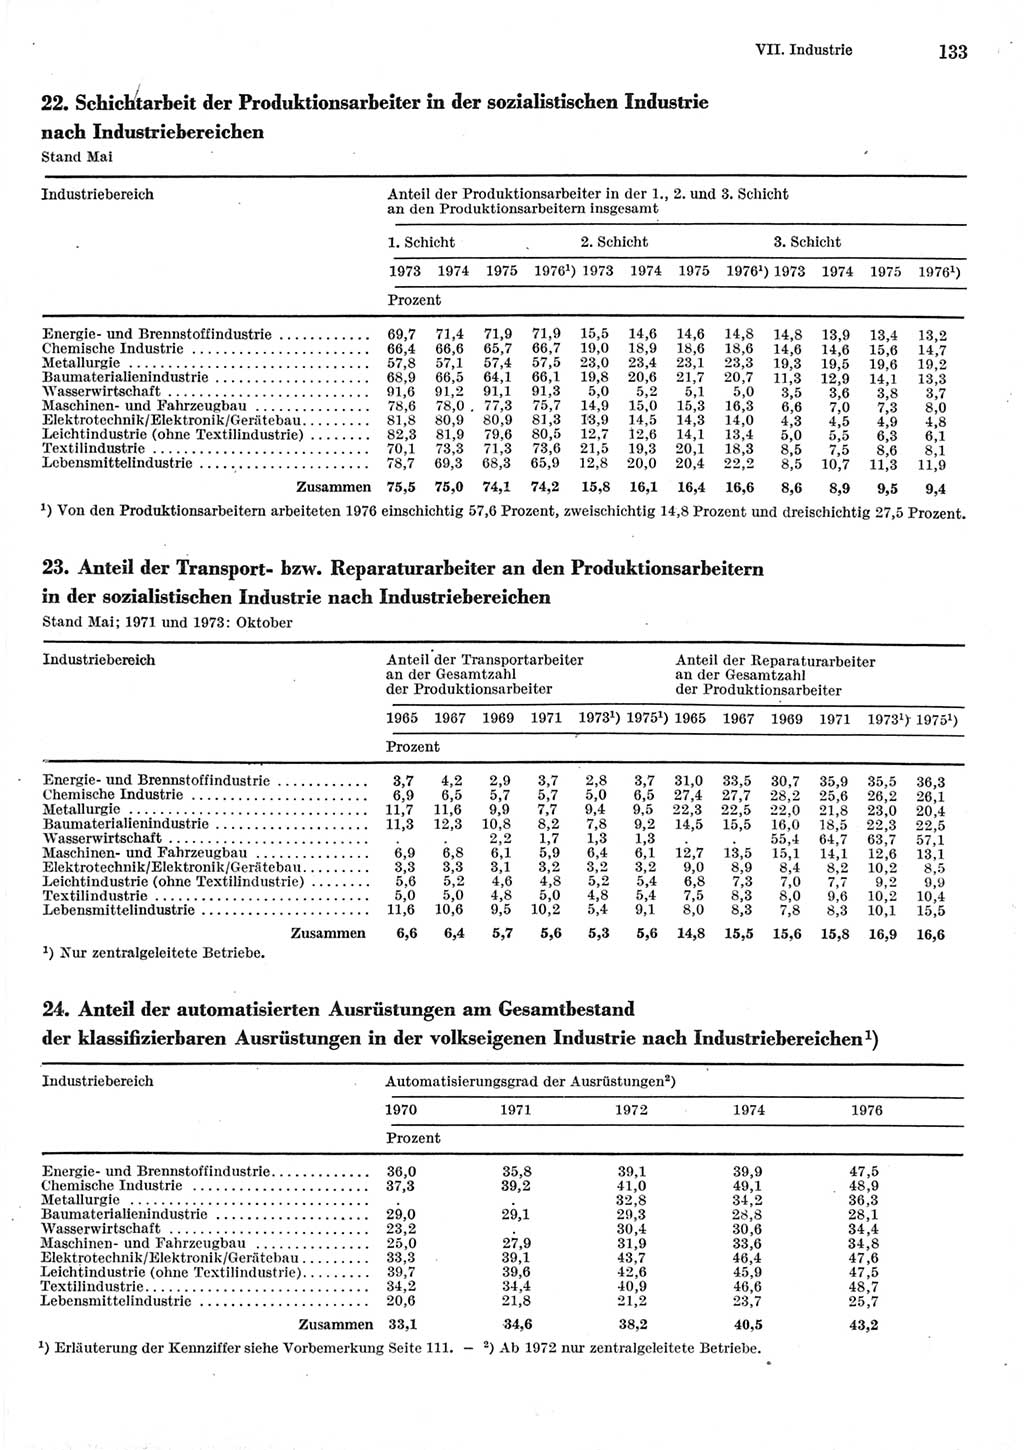 Statistisches Jahrbuch der Deutschen Demokratischen Republik (DDR) 1977, Seite 133 (Stat. Jb. DDR 1977, S. 133)